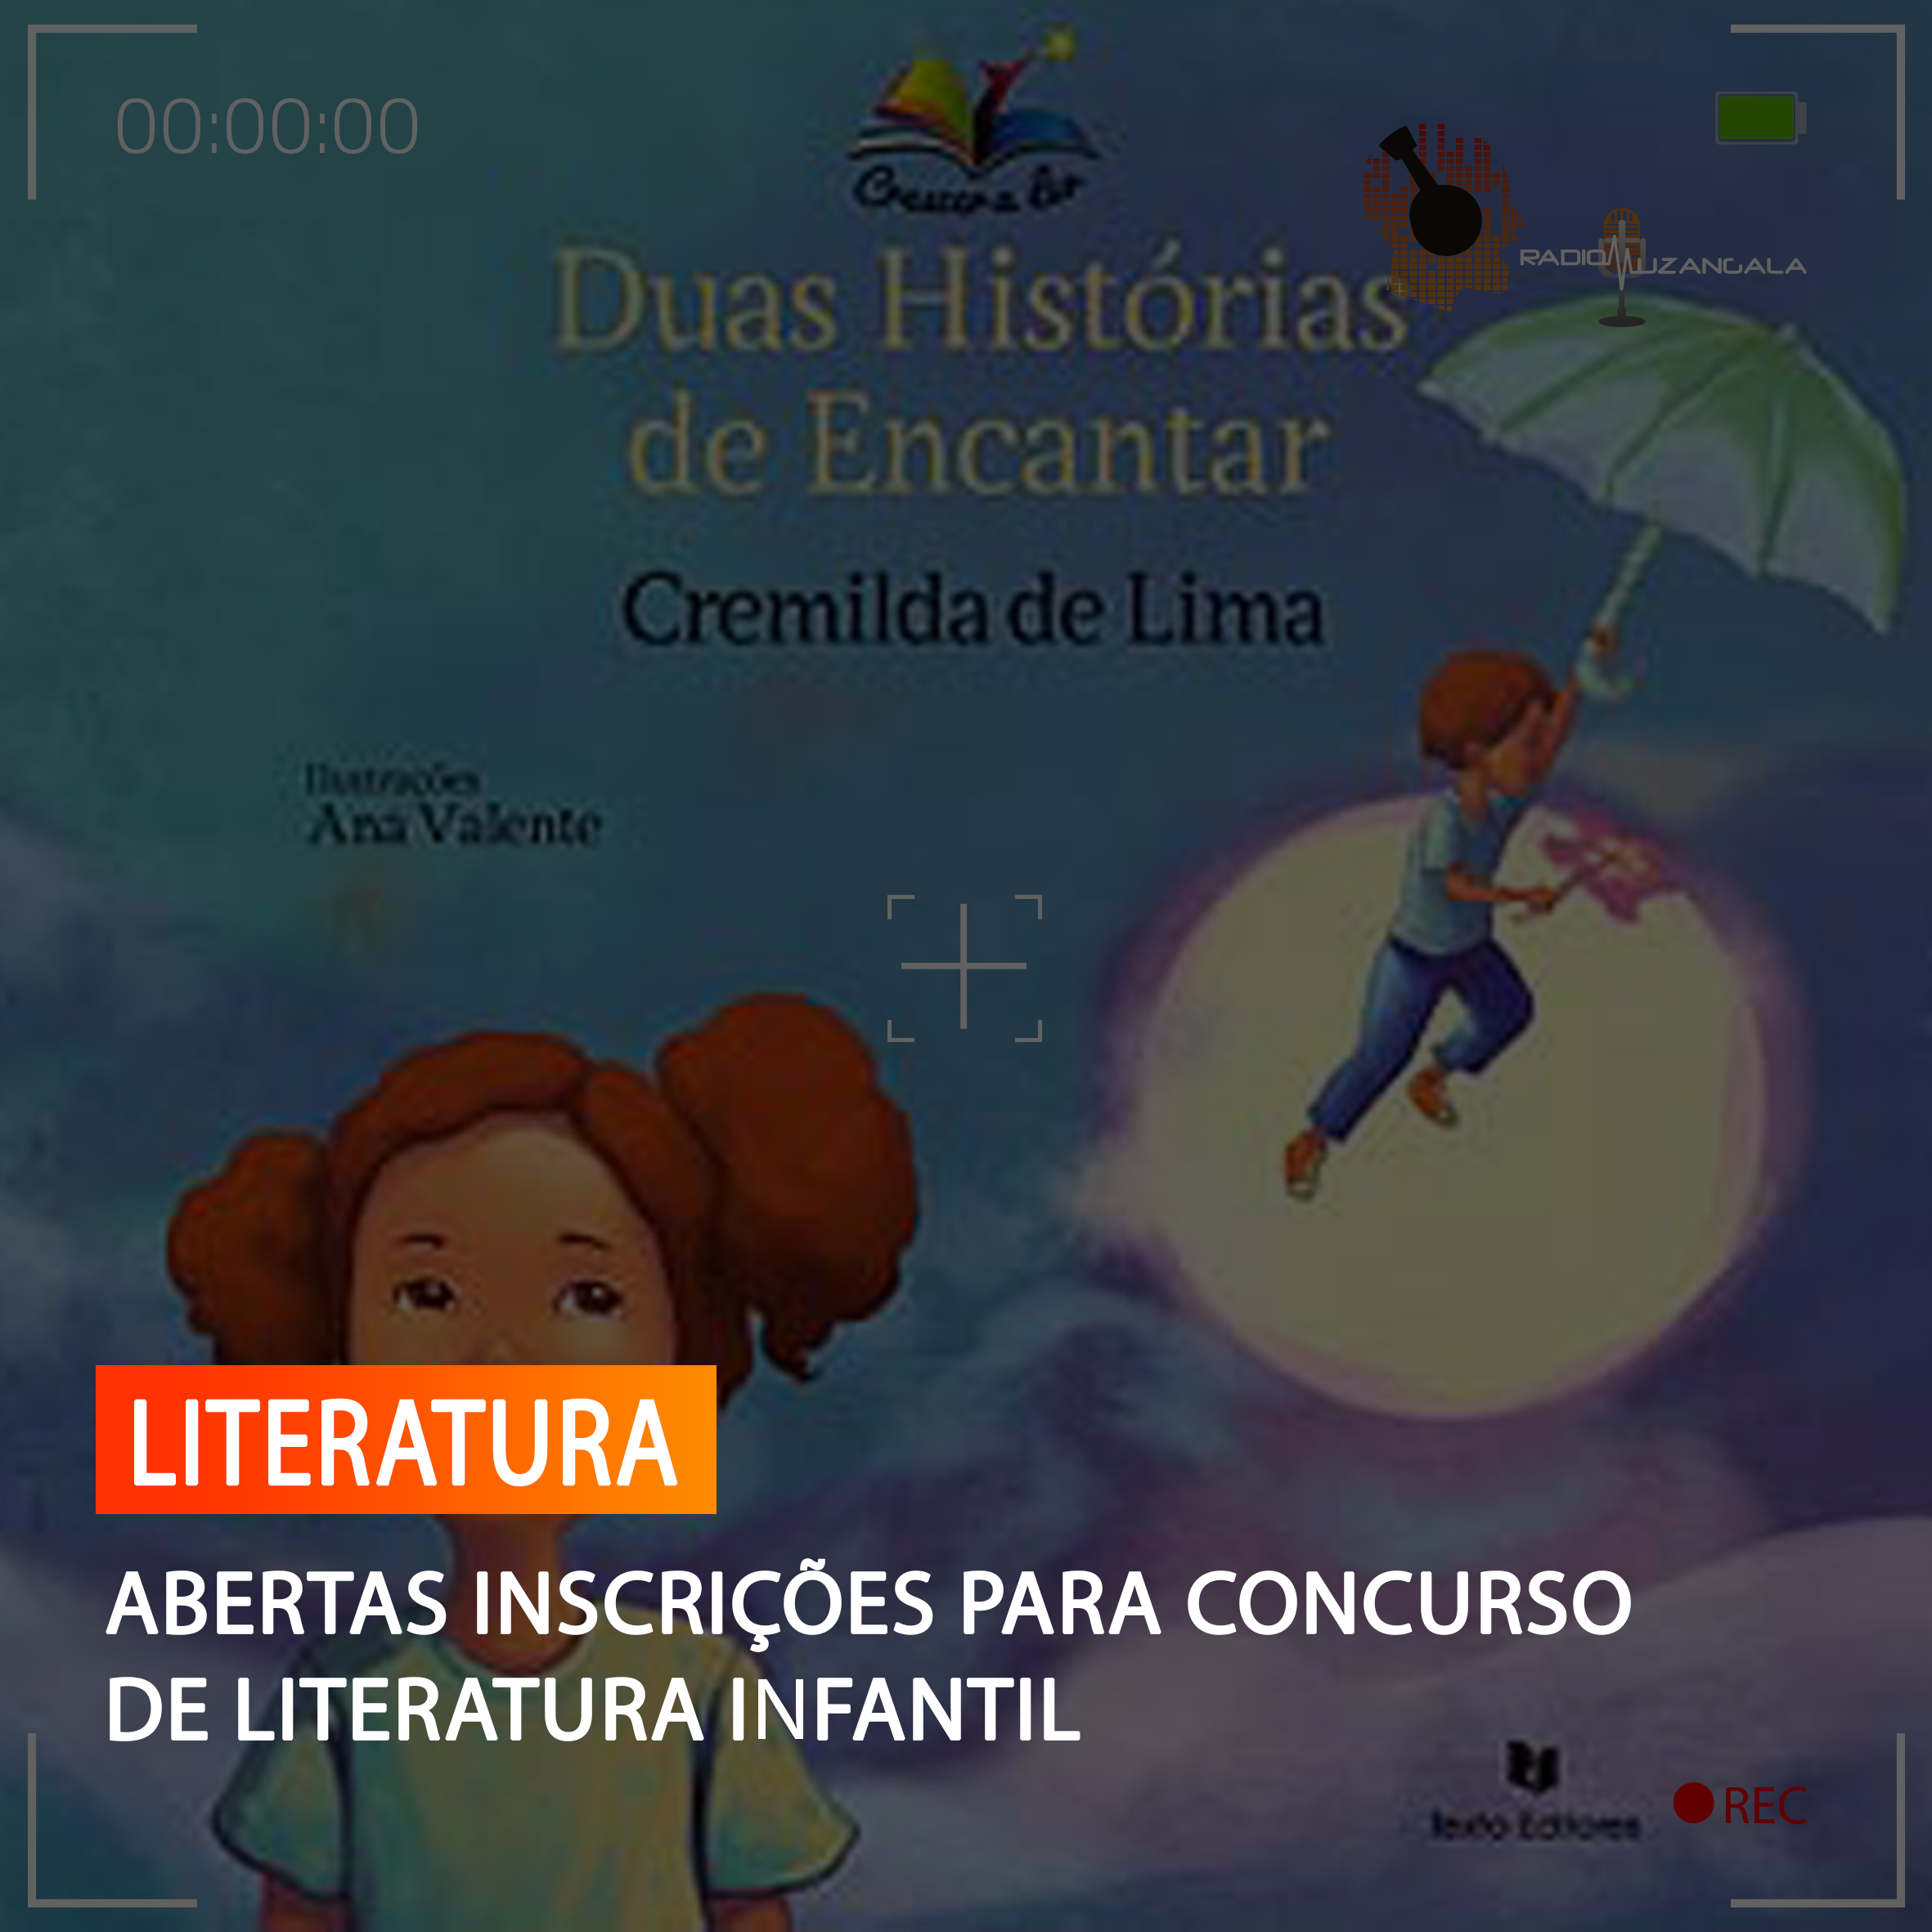  ABERTAS INSCRIÇÕES PARA CONCURSO DE LITERATURA INFANTIL